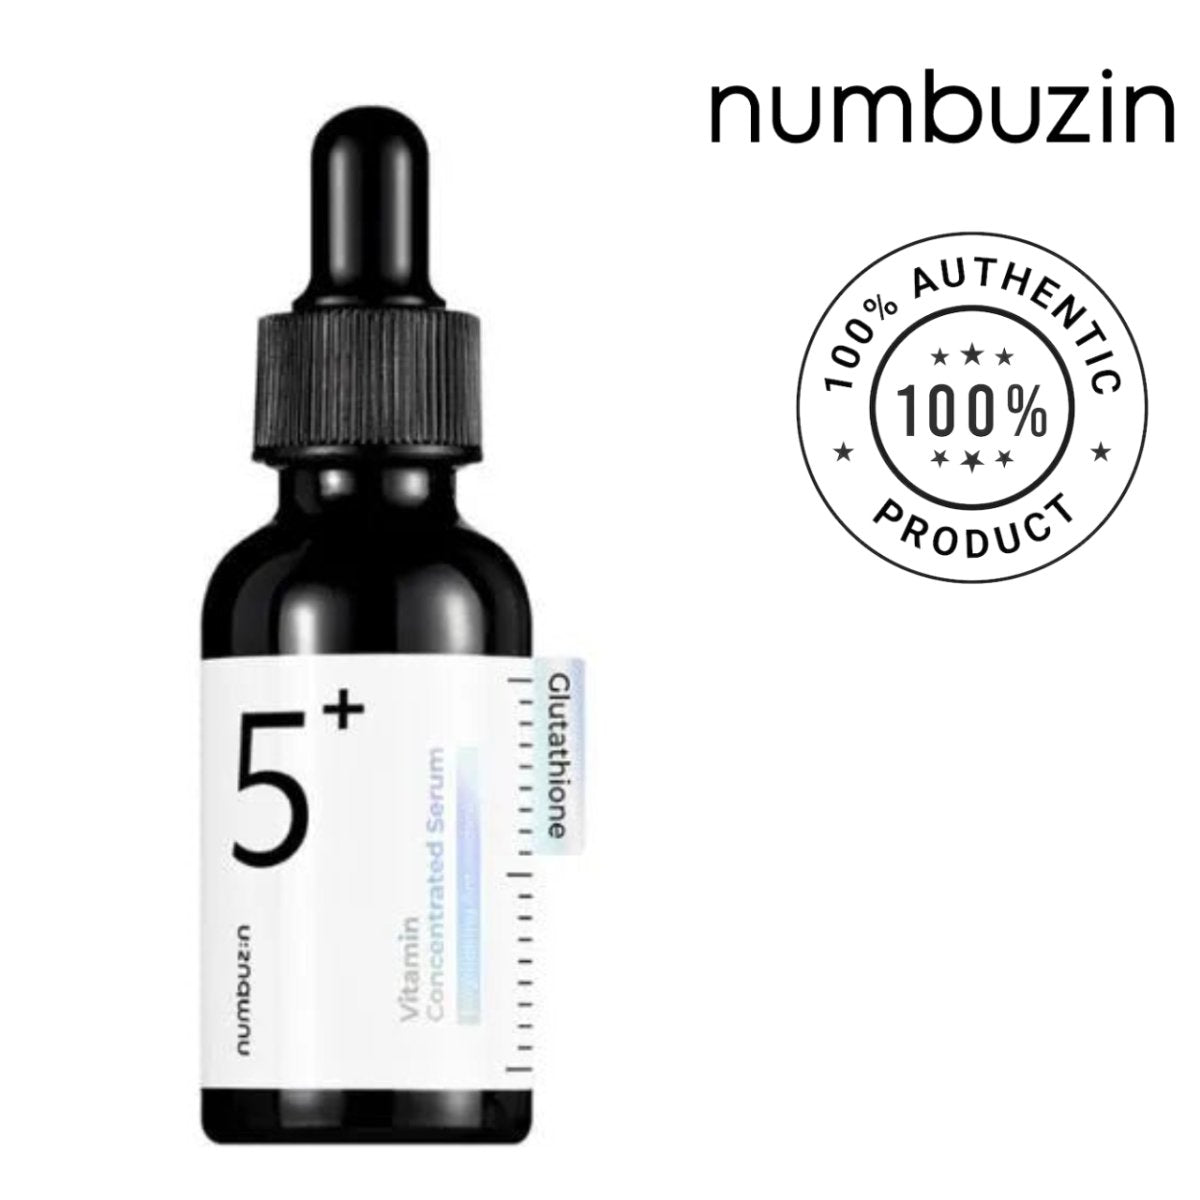 Numbuzin 5+ vitamin concentrated serum Brightening antioxidant 30ml